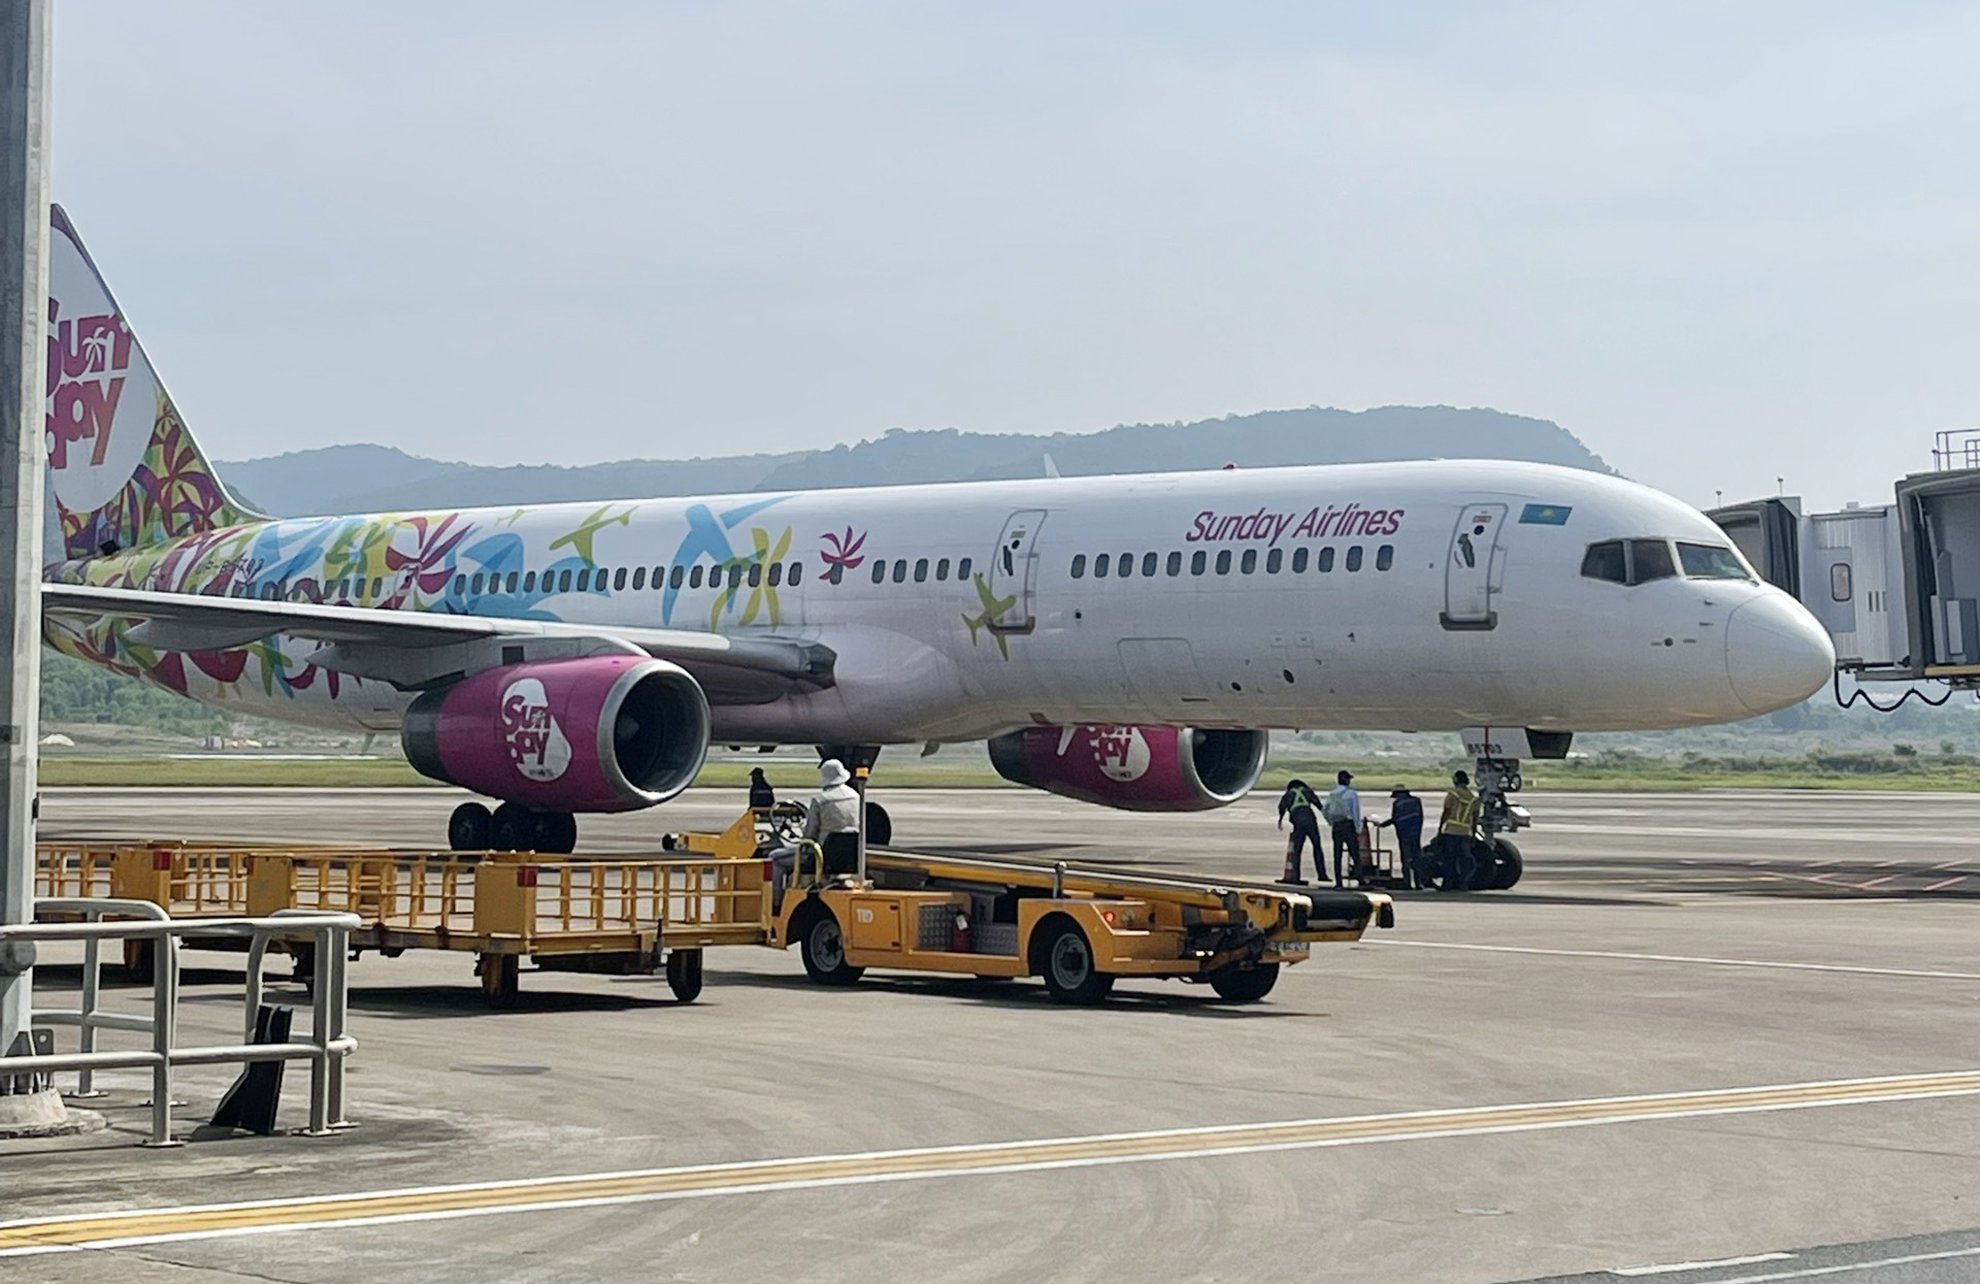 Phu Quoc don chuyen bay quoc te dau tien sau 15/3 anh 1  - pq - Phú Quốc đón 235 khách từ Kazakhstan sau mở cửa du lịch